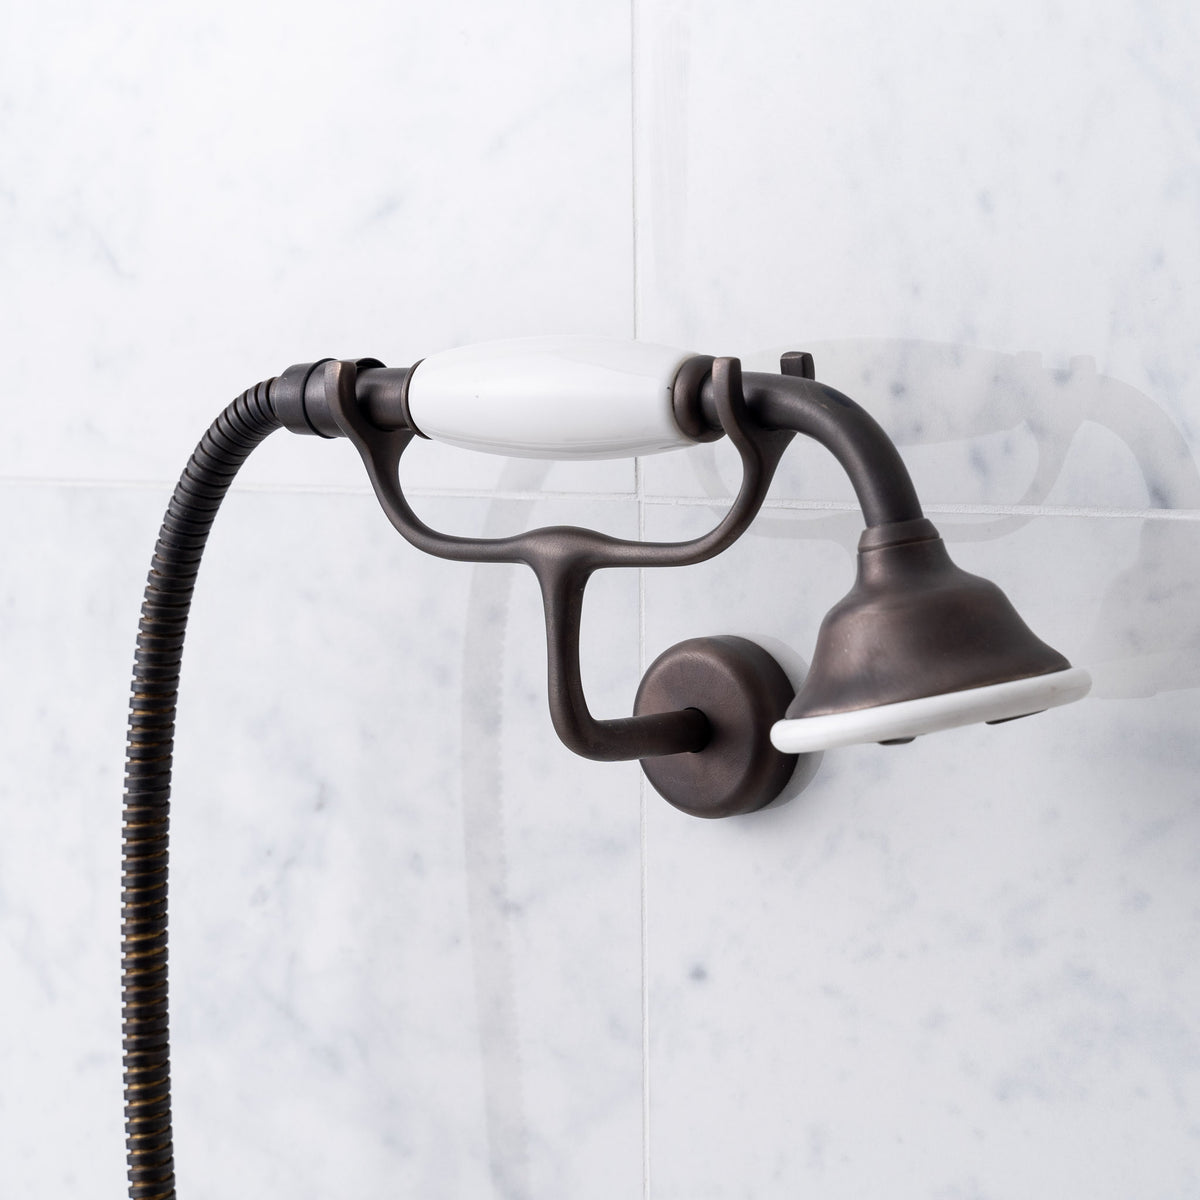 Overton White Ceramic Lever &amp; Cleaver Exposed Shower Set - Rutland London